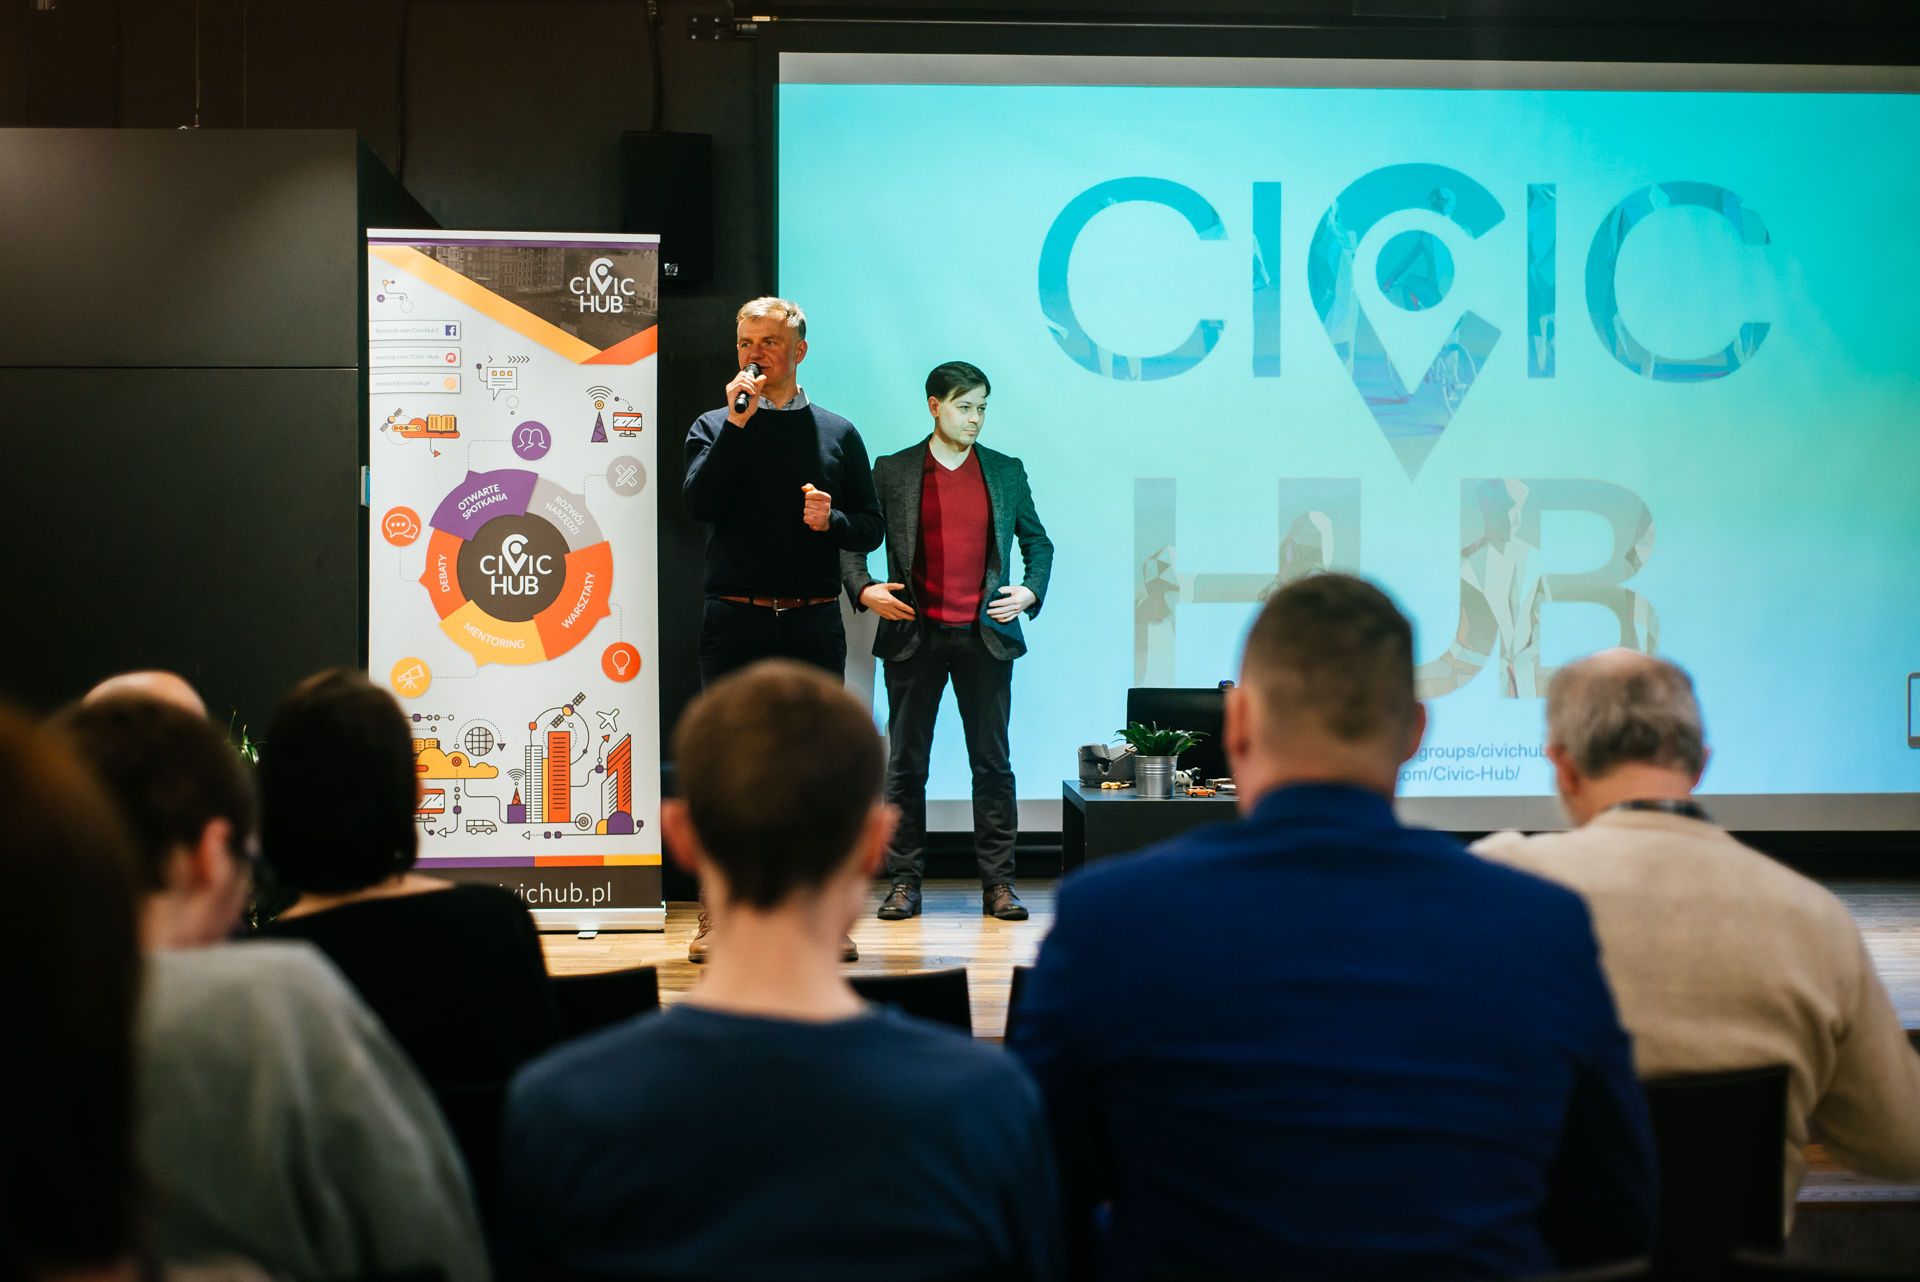 Dokumentacja fotograficzna konferencji - wydarzenie zorganizował Civic Hub w Gdańsku